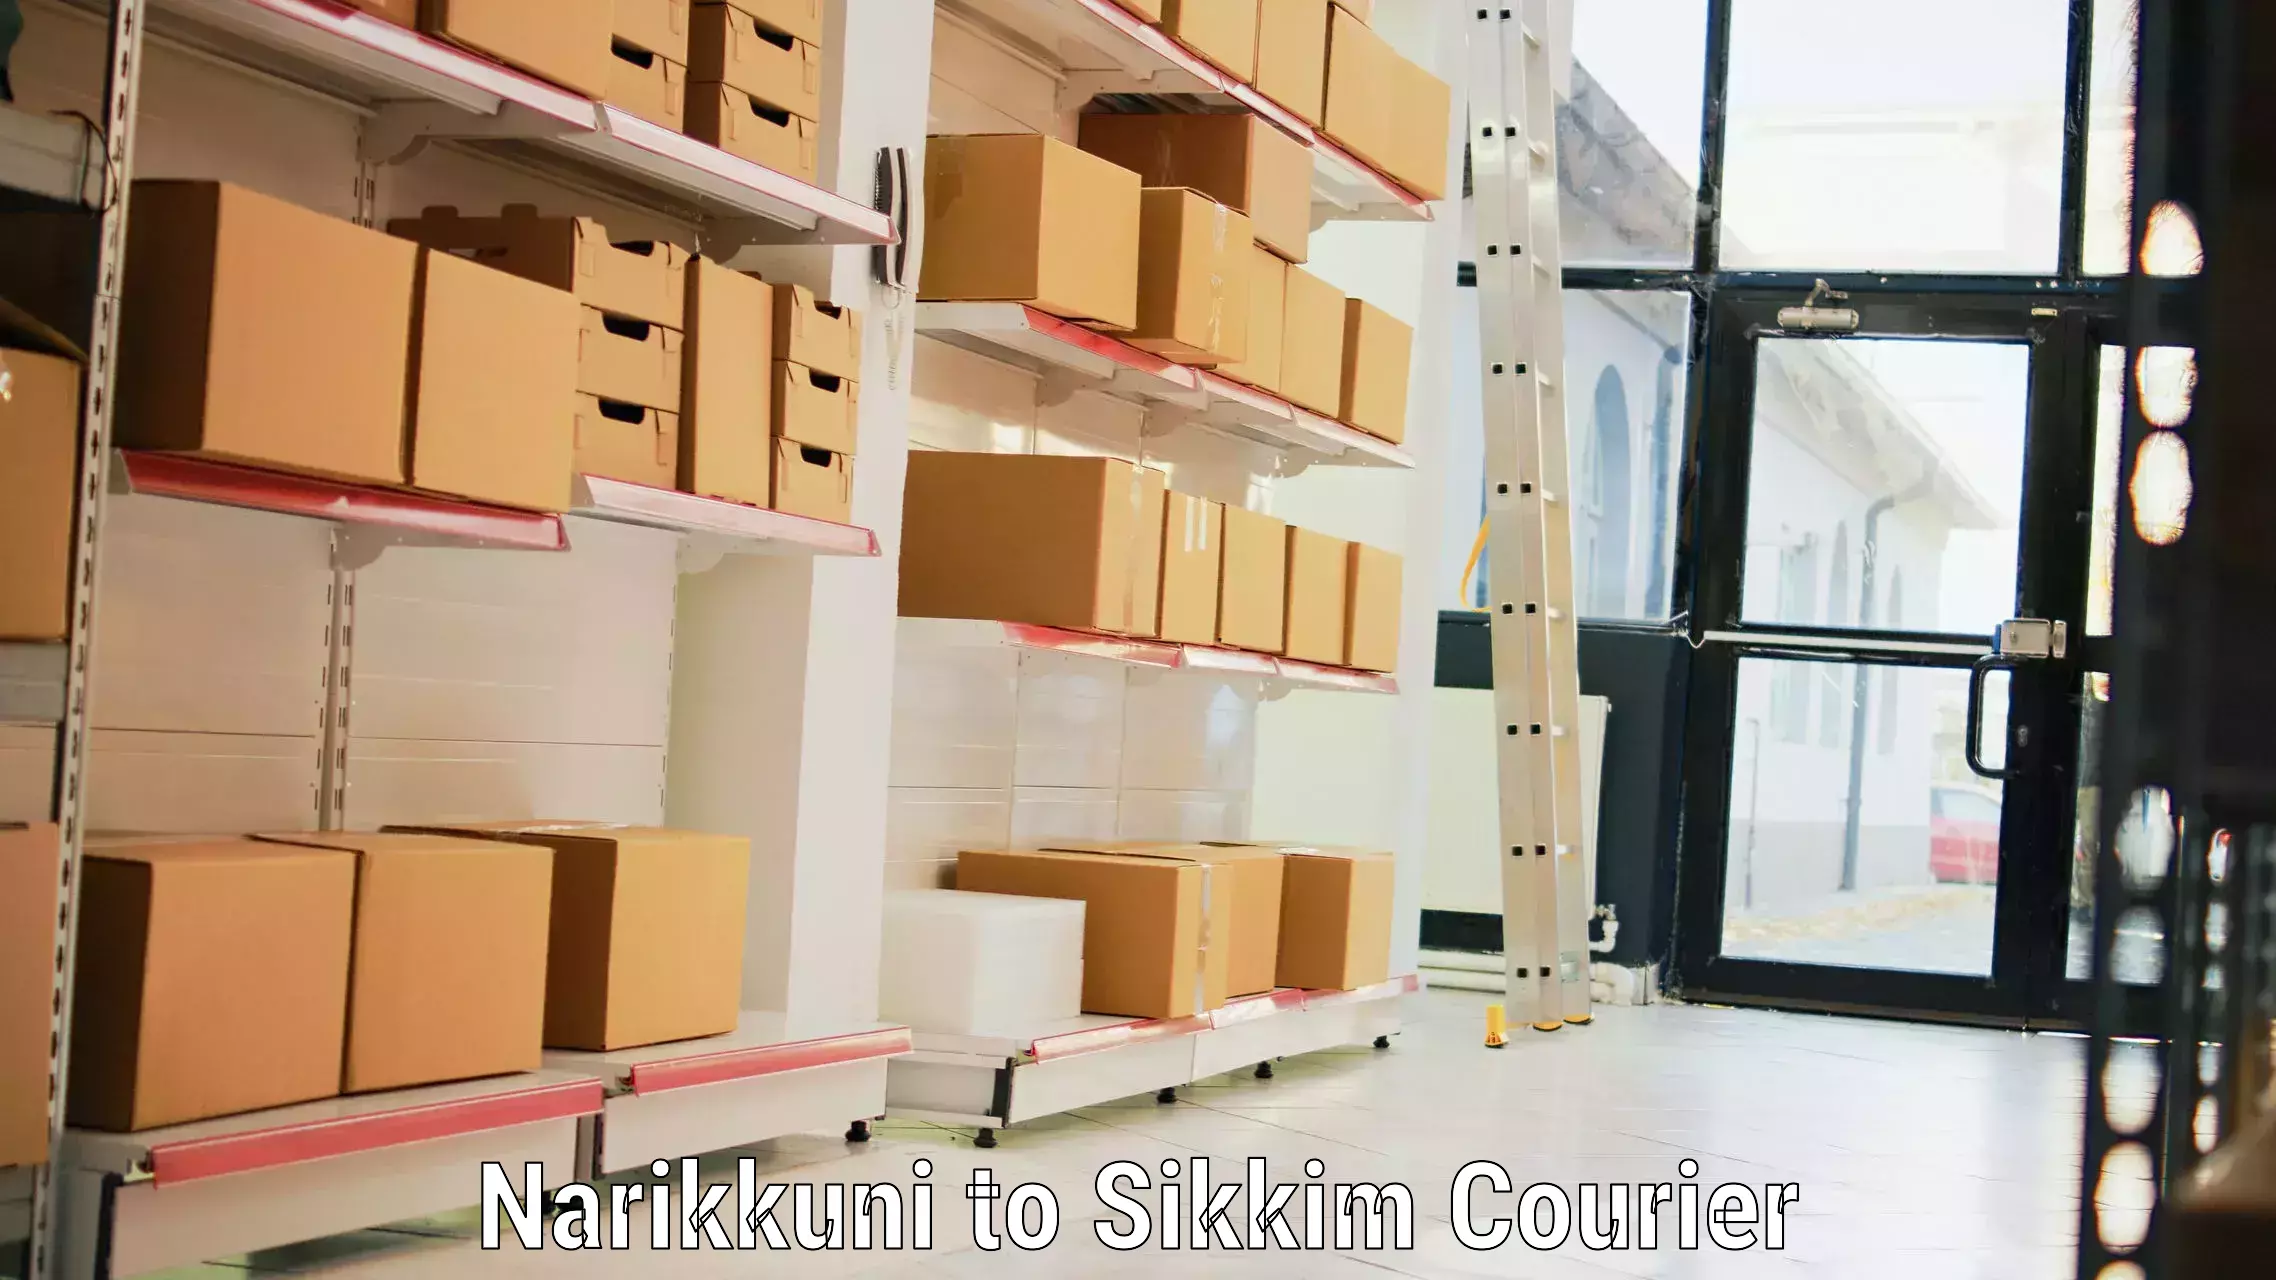 Luggage delivery network Narikkuni to Namchi